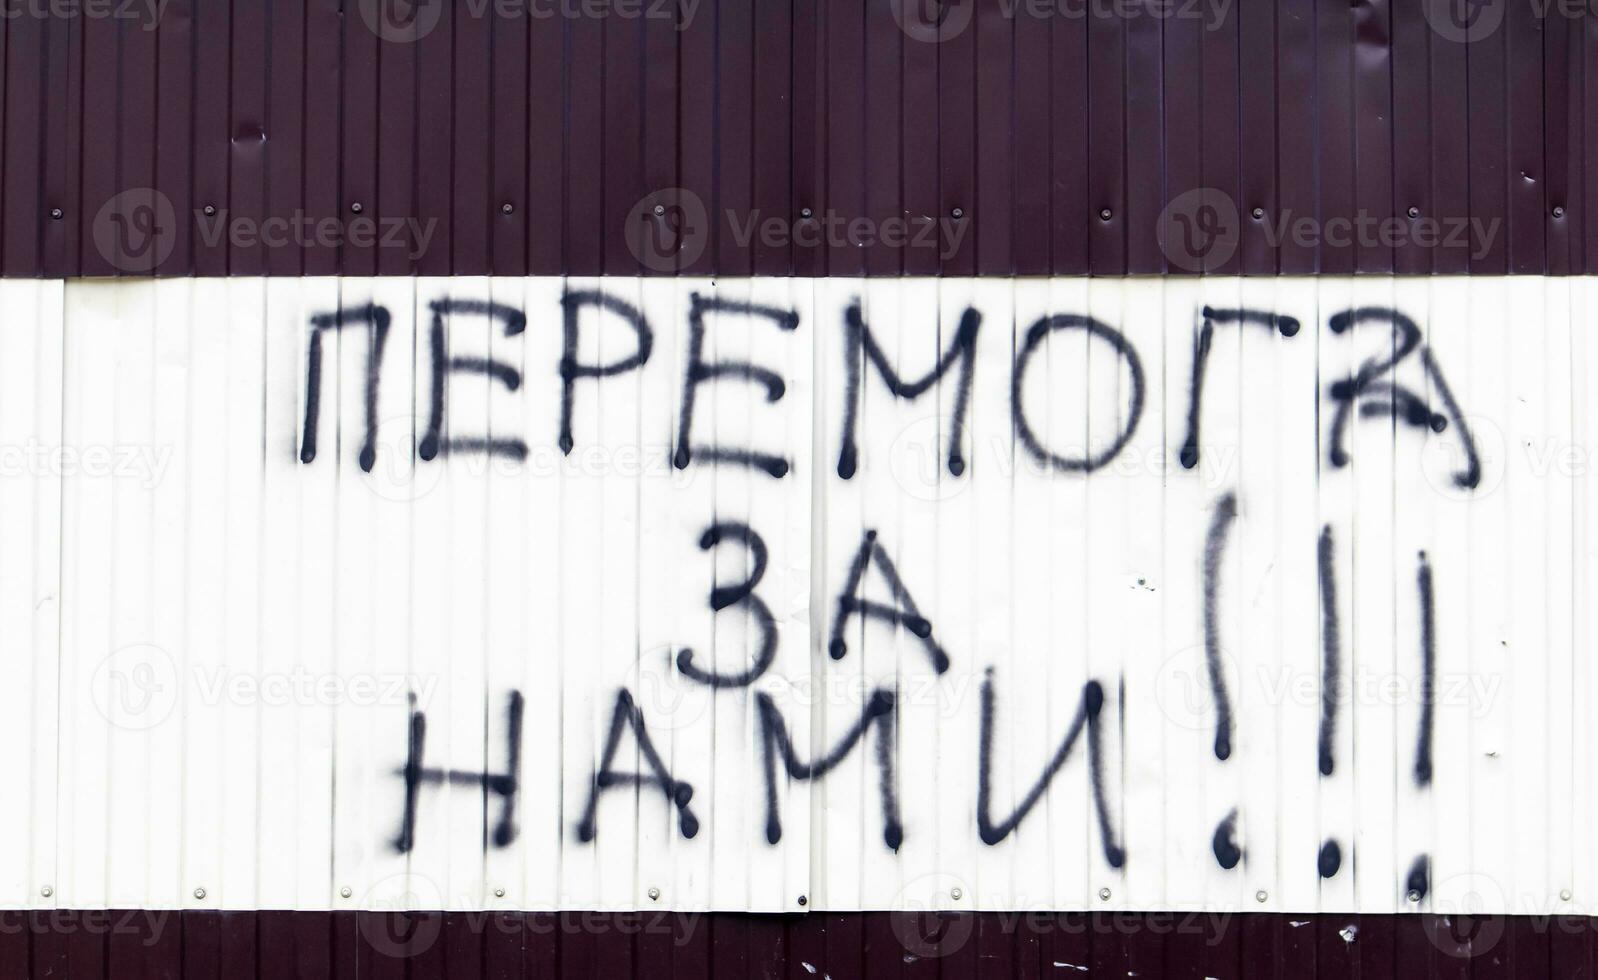 das Text auf das Mauer ist gemalt mit schwarz sprühen malen. Übersetzung - - Sieg ist unsere. patriotisch Text im ukrainisch. das Konzept von Frieden, Nein Krieg, Sieg im Krieg. foto